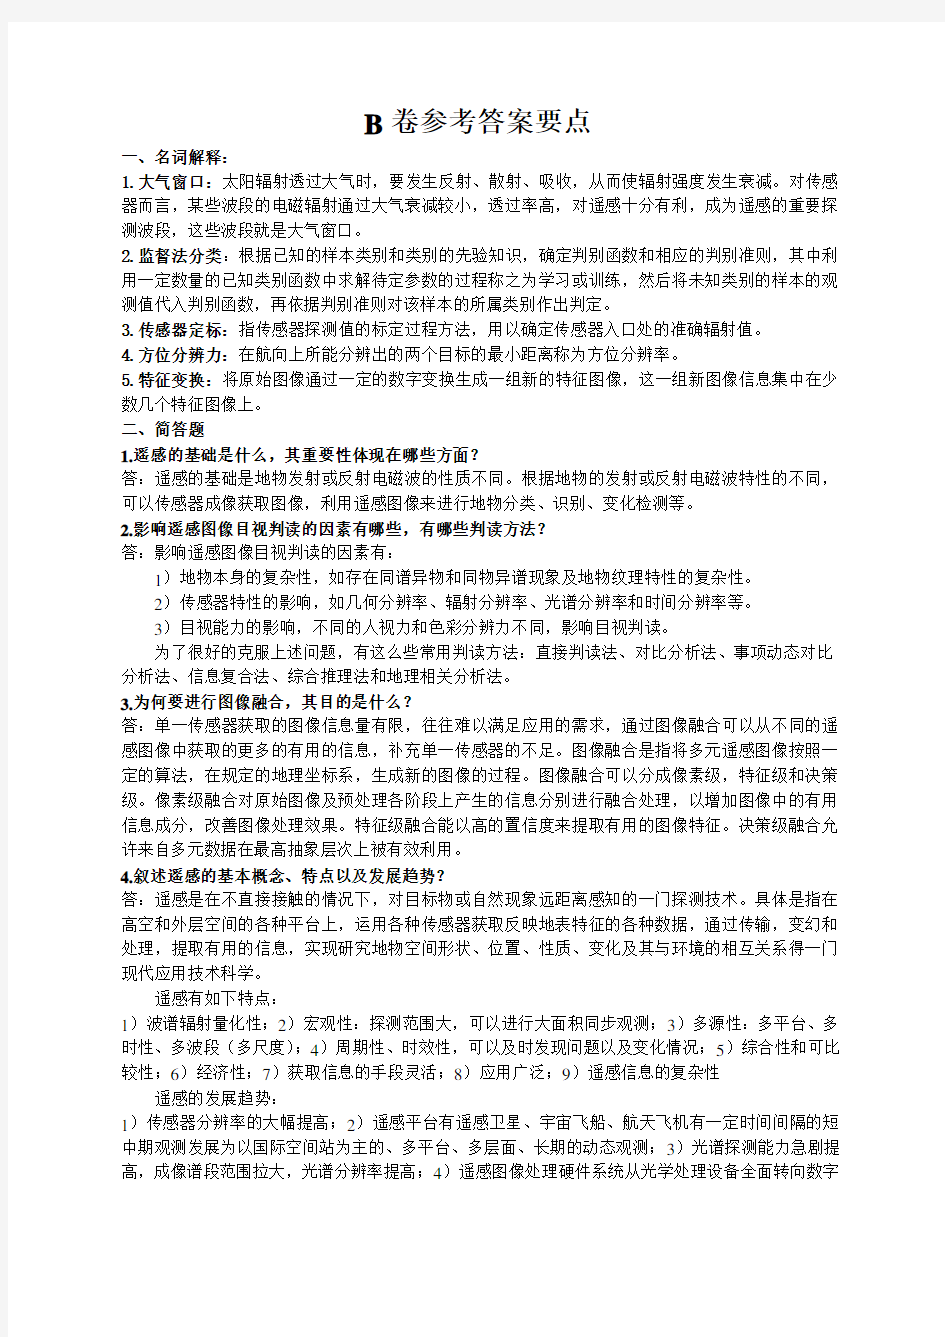 中国矿业大学《遥感原理与应用》试题2